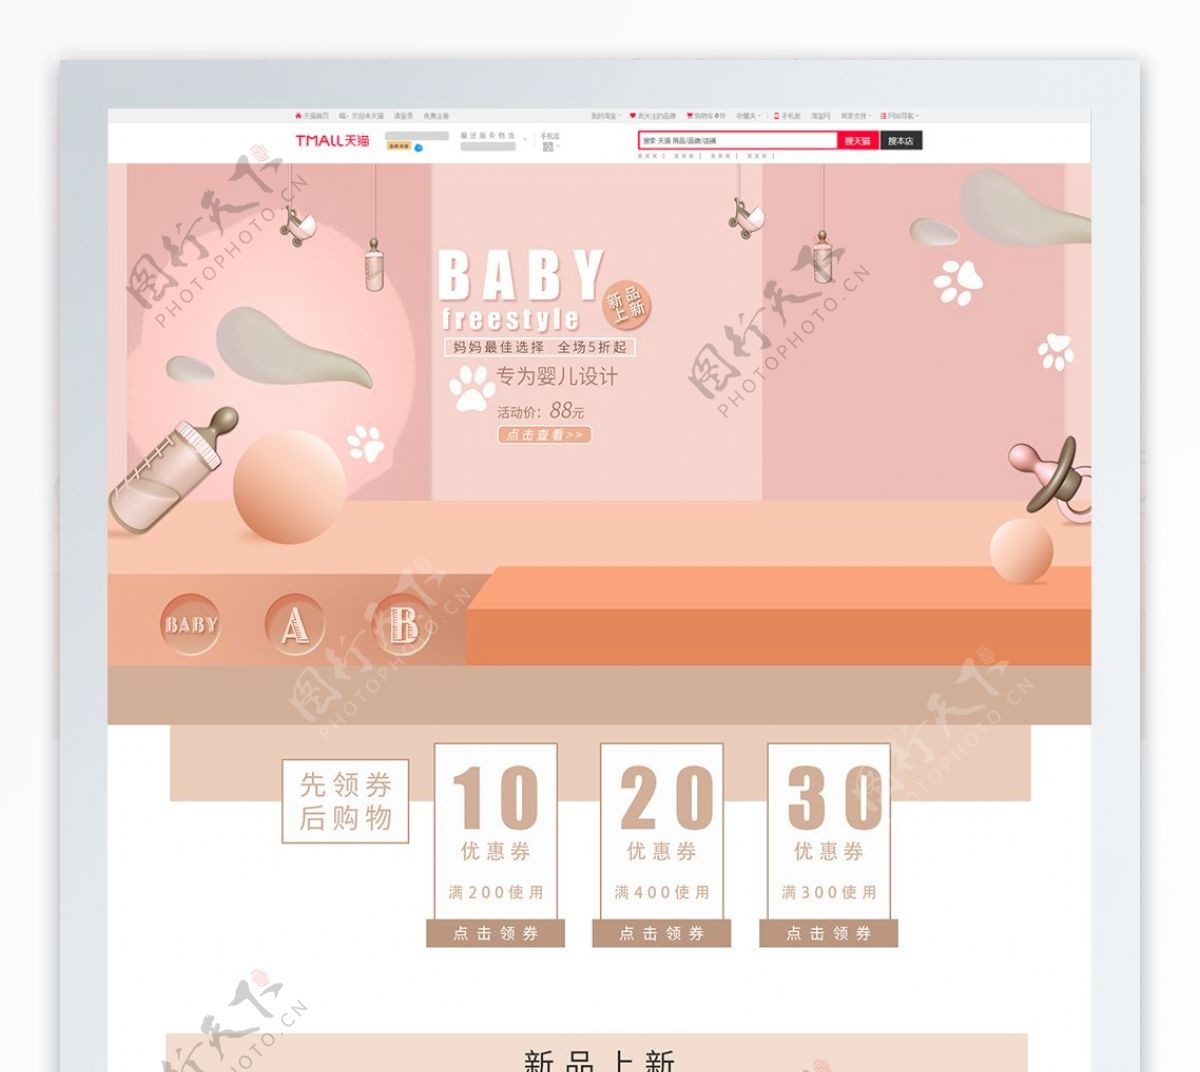 天猫婴儿用品首页儿童婴童用品首页模板